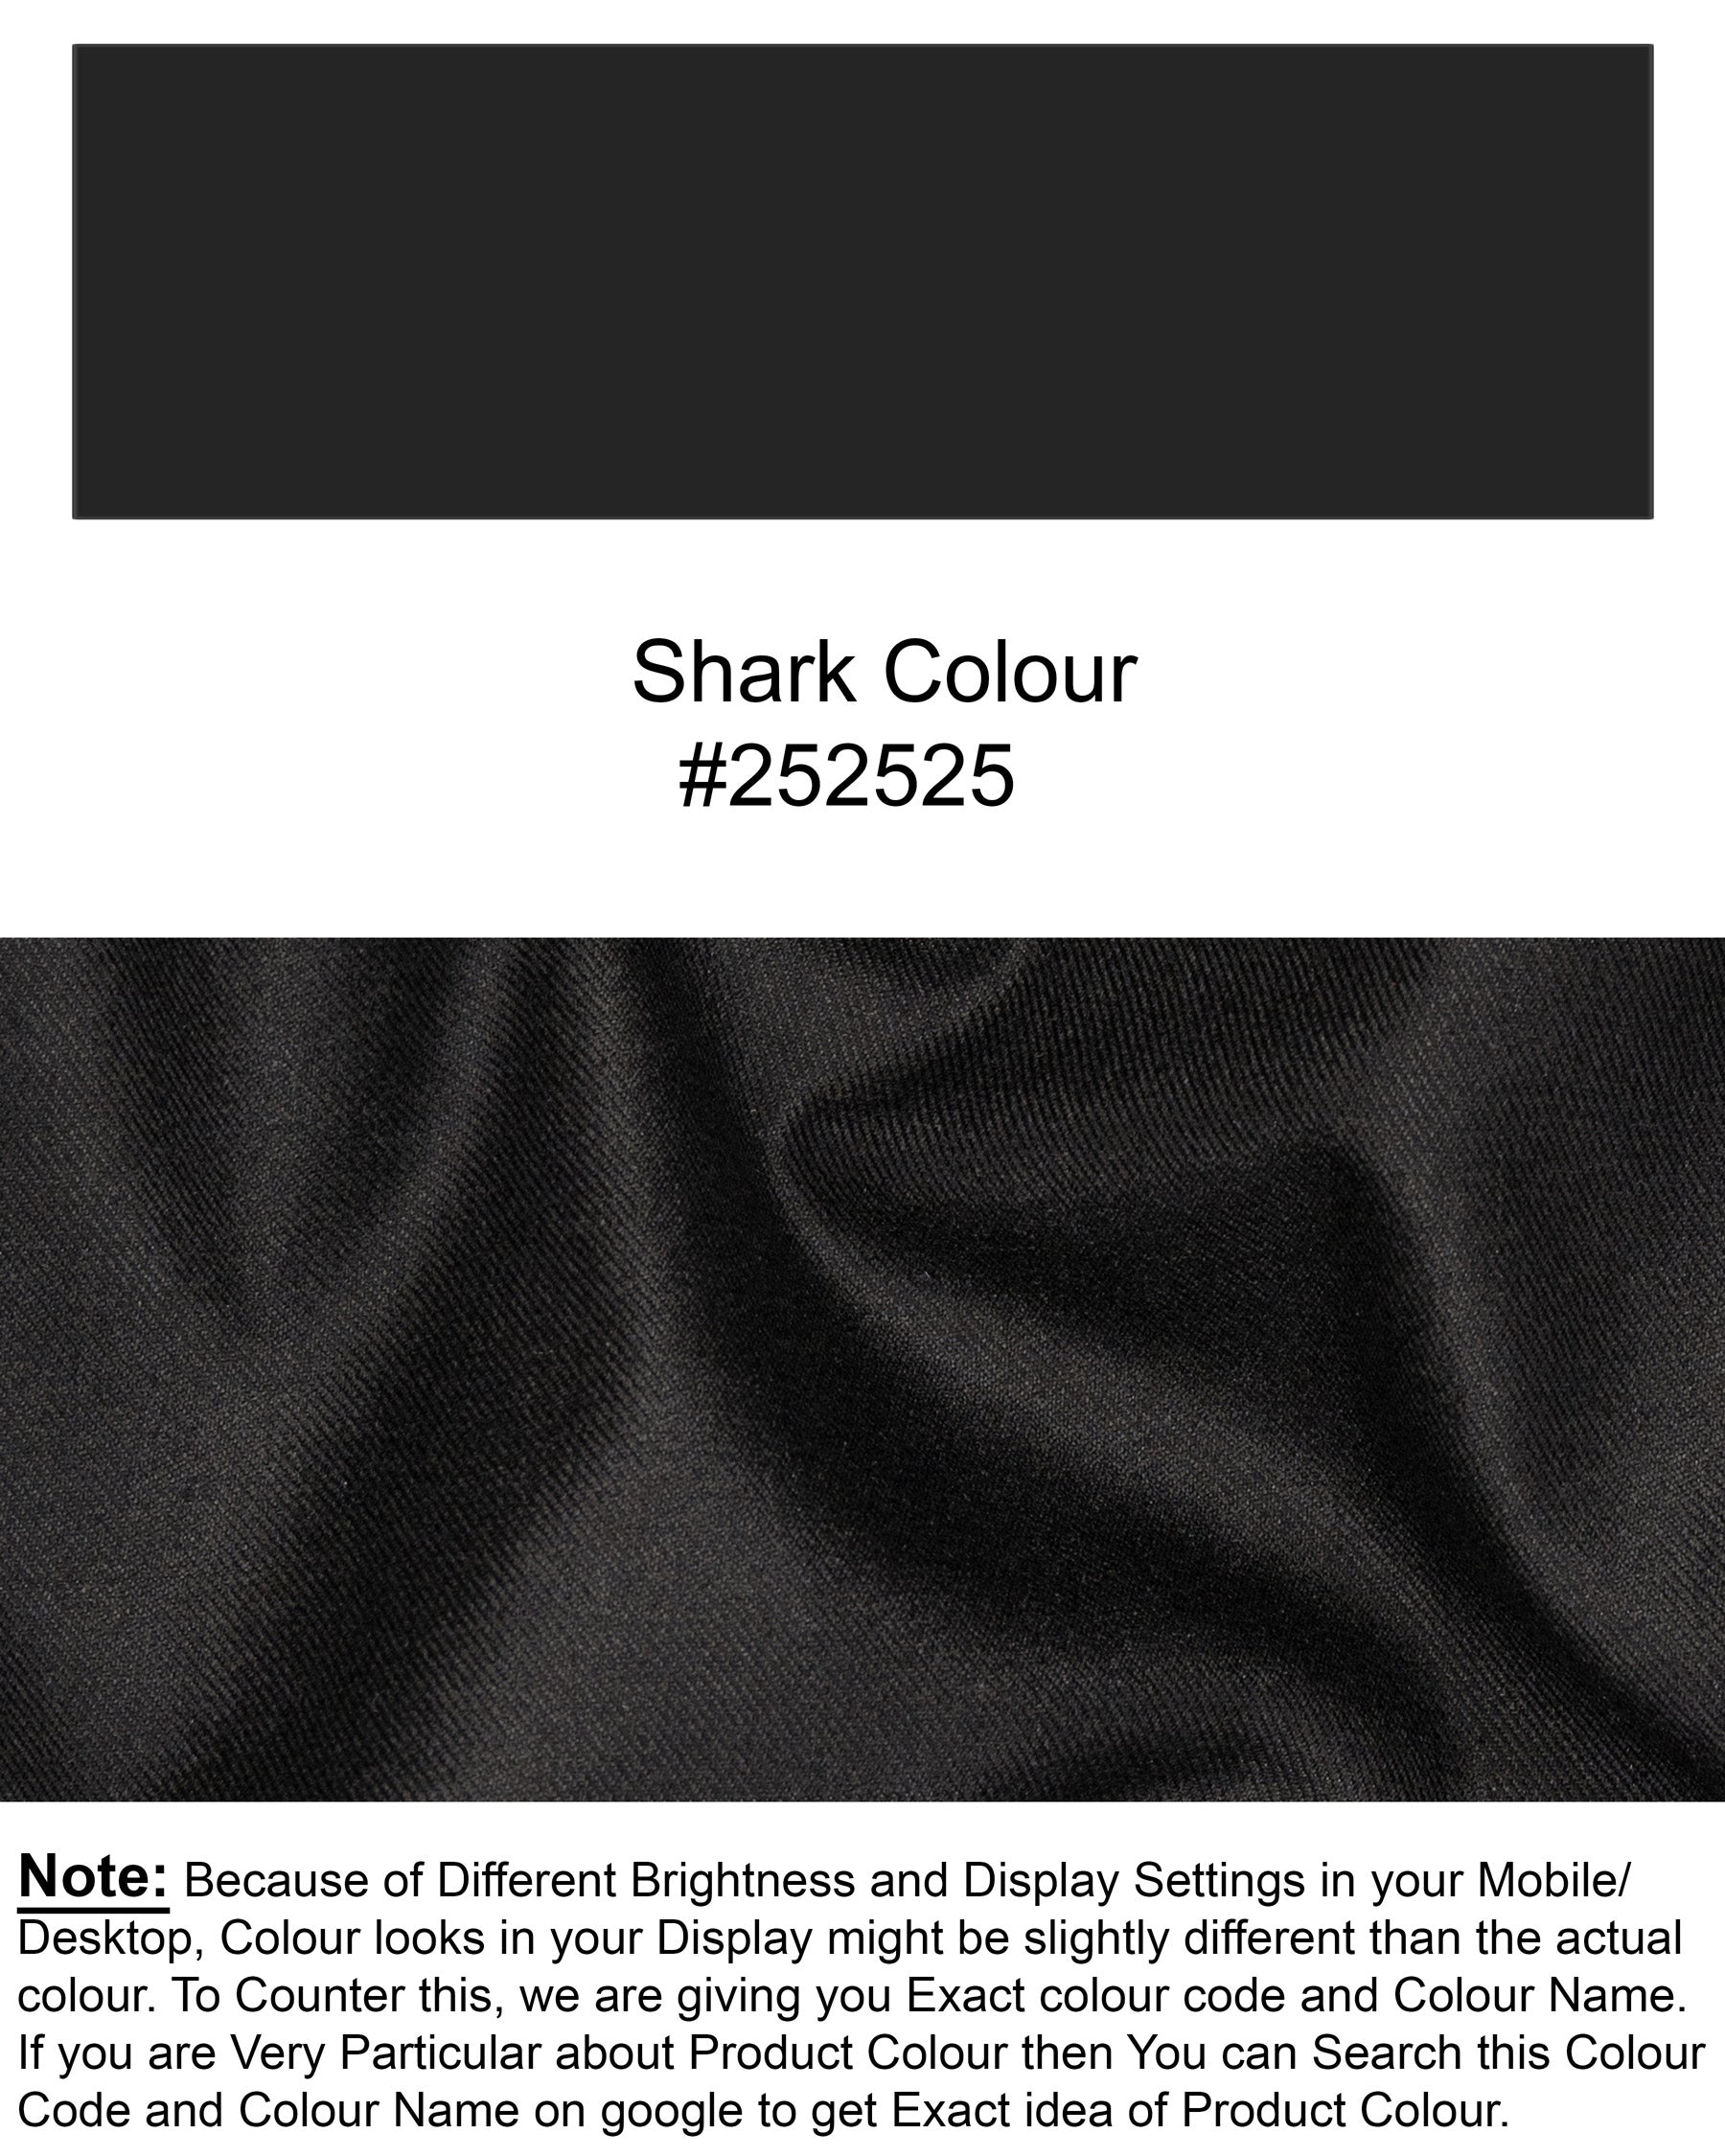 Shark STack Wool Rich Suit ST1441-D24-36,ST1441-D24-38,ST1441-D24-40,ST1441-D24-42,ST1441-D24-44,ST1441-D24-46,ST1441-D24-48,ST1441-D24-50,ST1441-D24-52,ST1441-D24-54,ST1441-D24-56,ST1441-D24-58,ST1441-D24-60